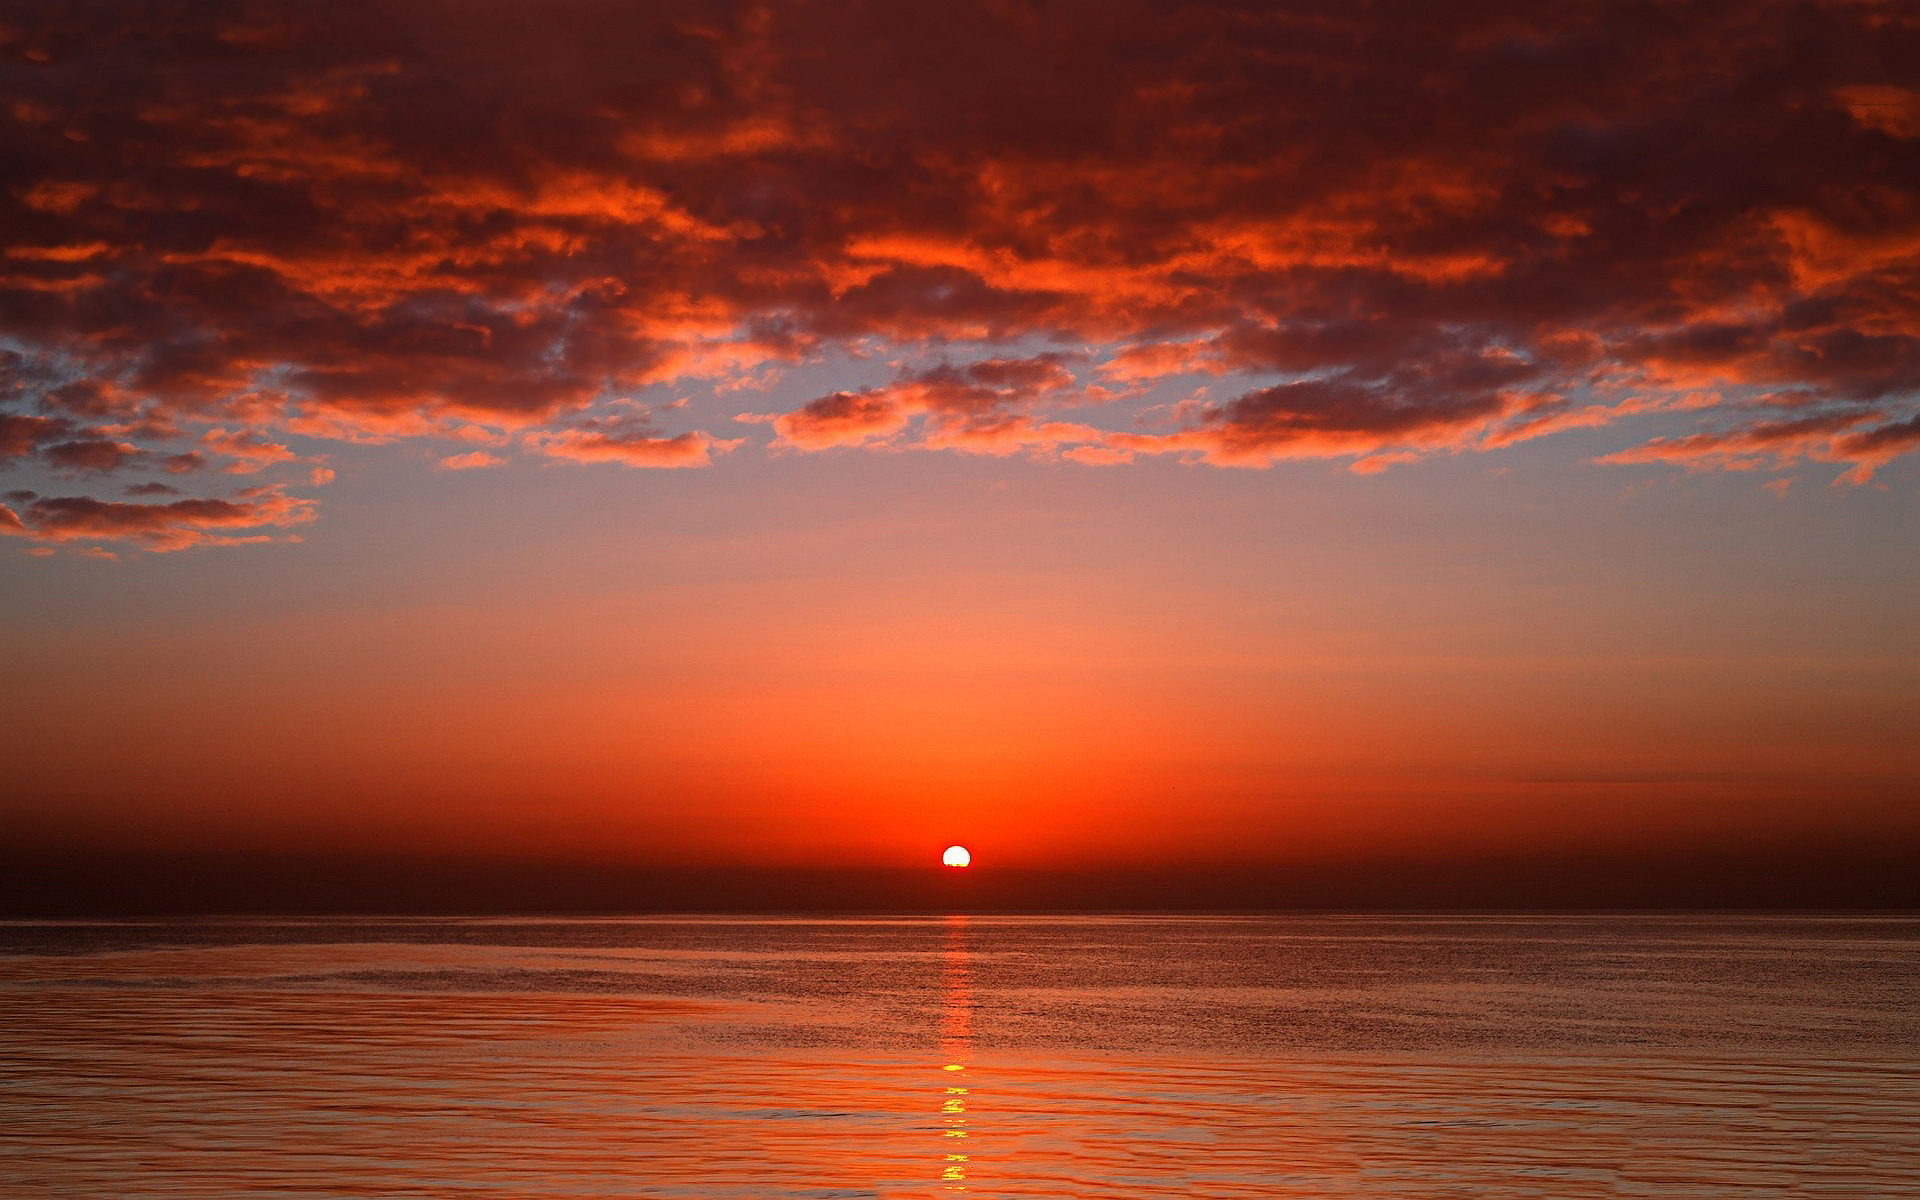 Ocean evening sunset wallpaper 1920x1200 31204